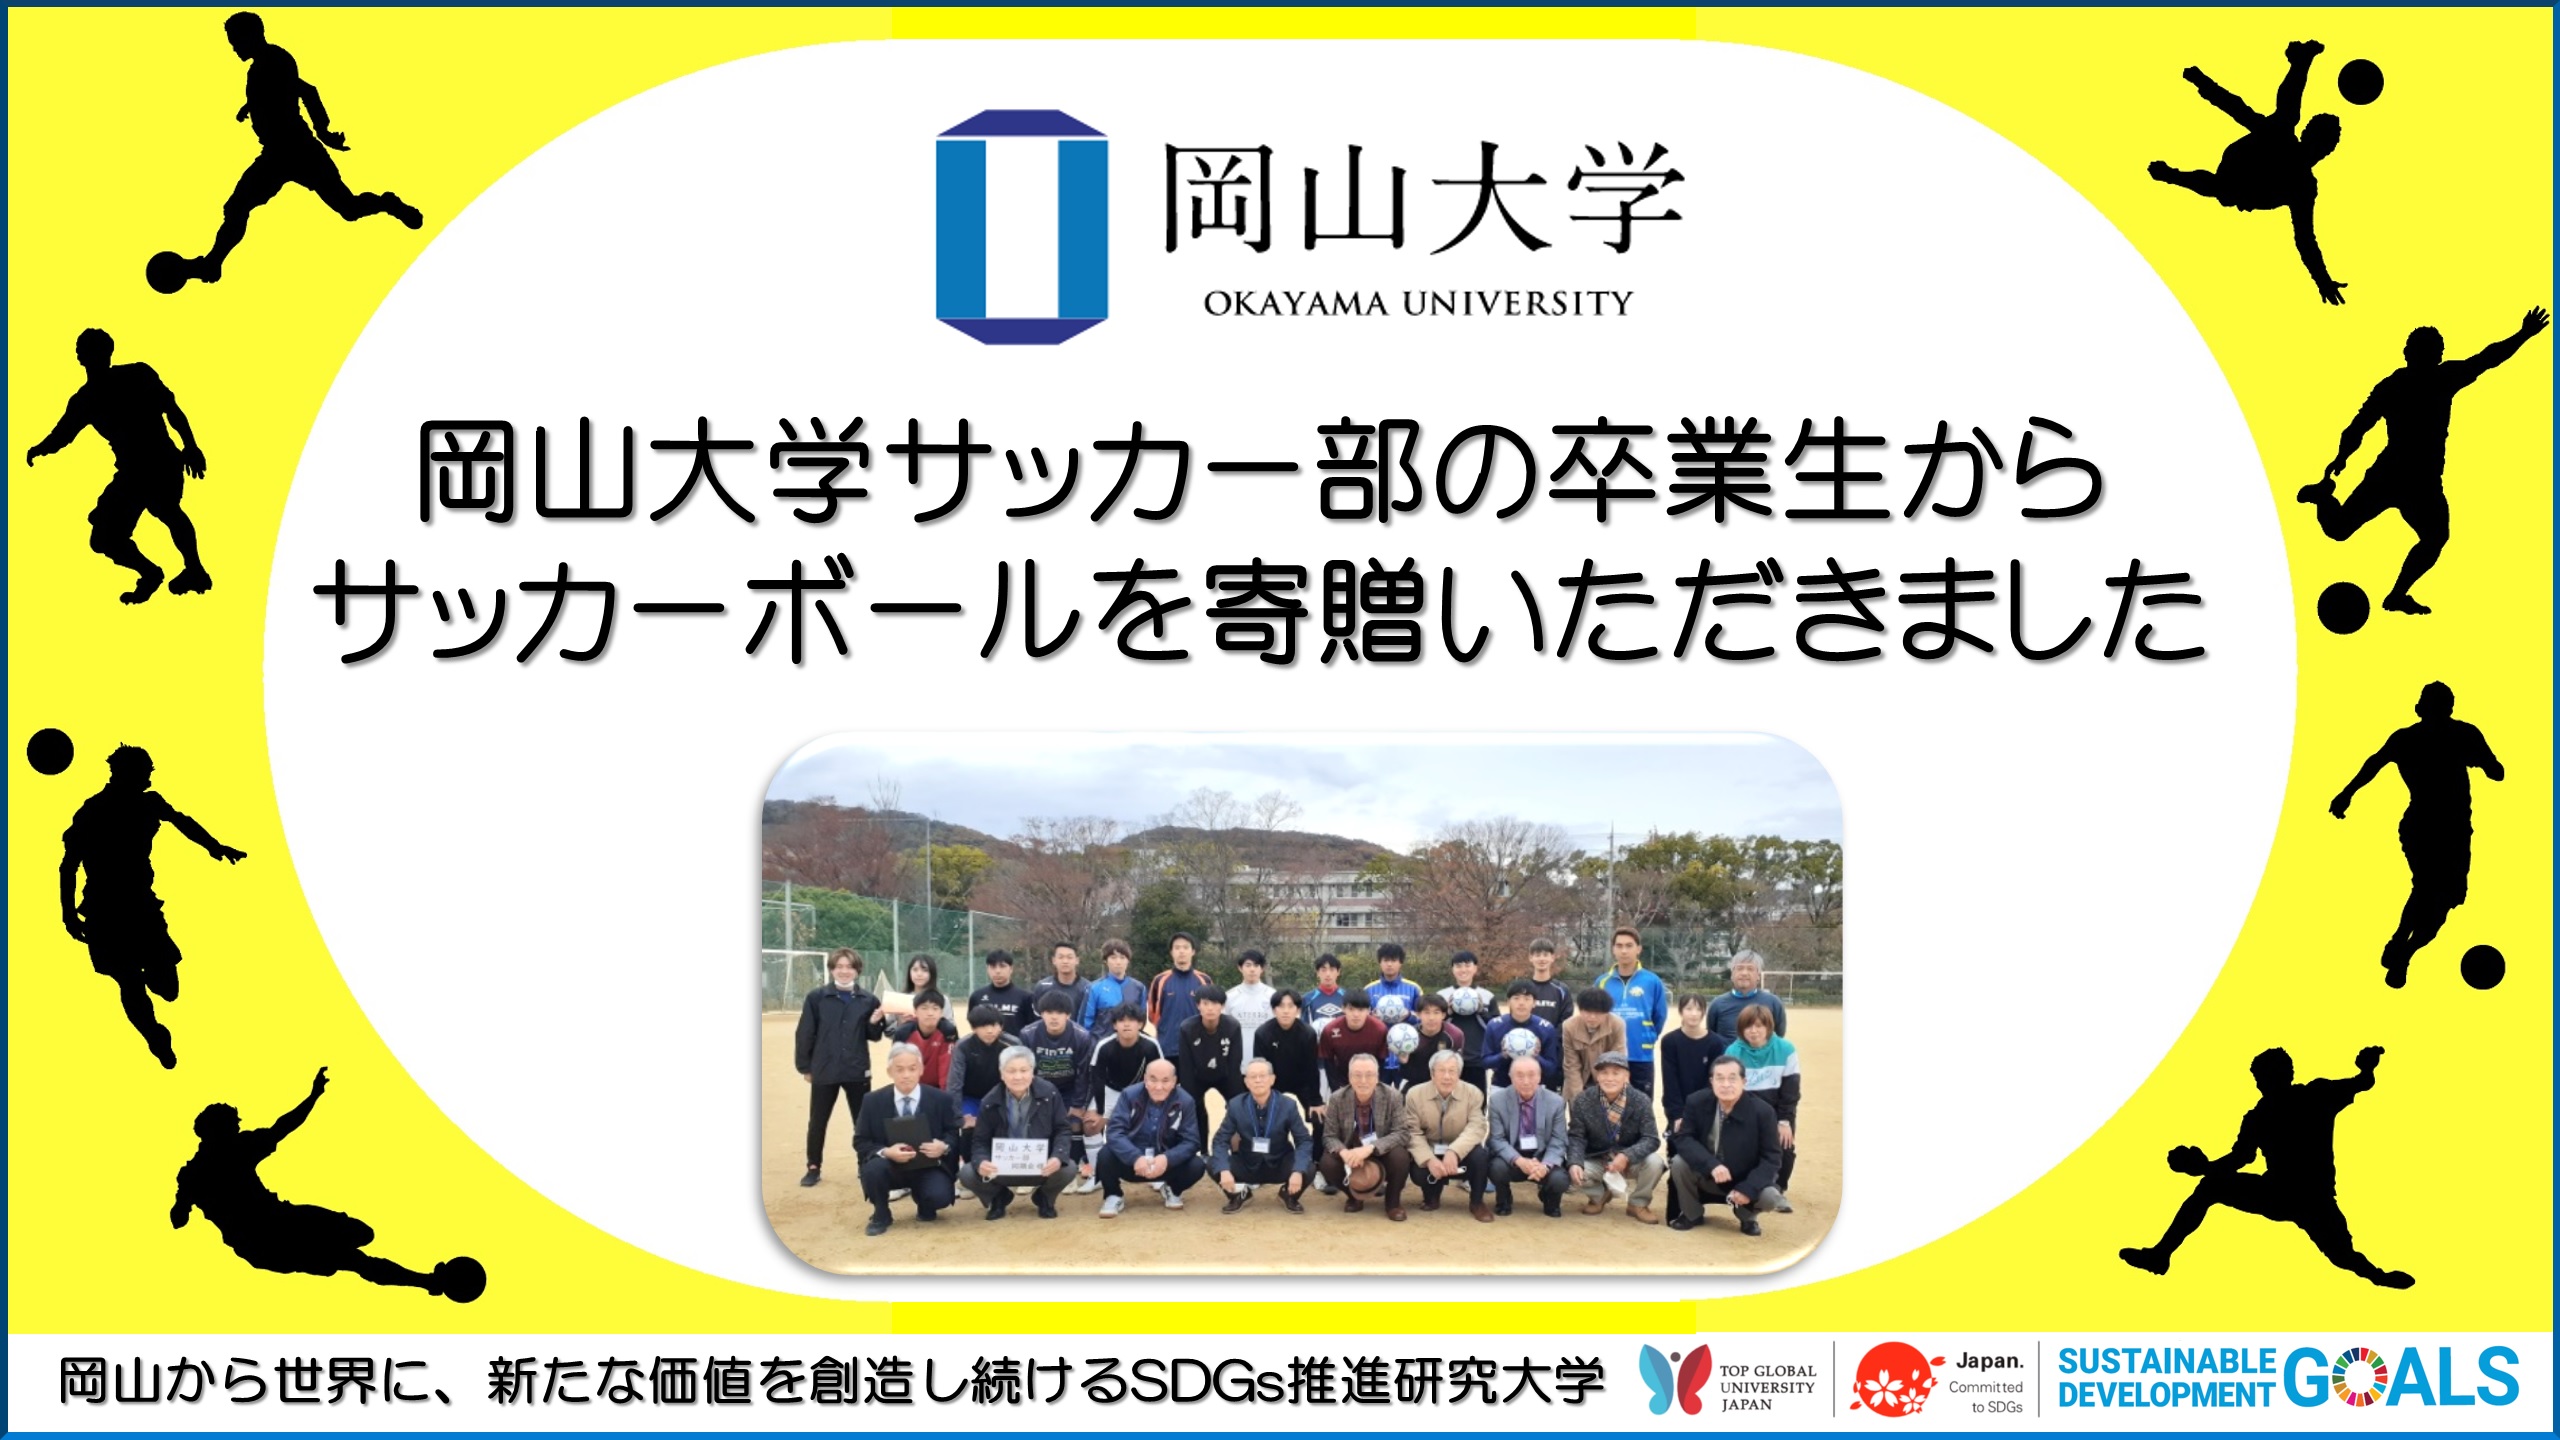 岡山大学 サッカー部の卒業生からサッカーボールを寄贈いただきました 国立大学法人岡山大学のプレスリリース